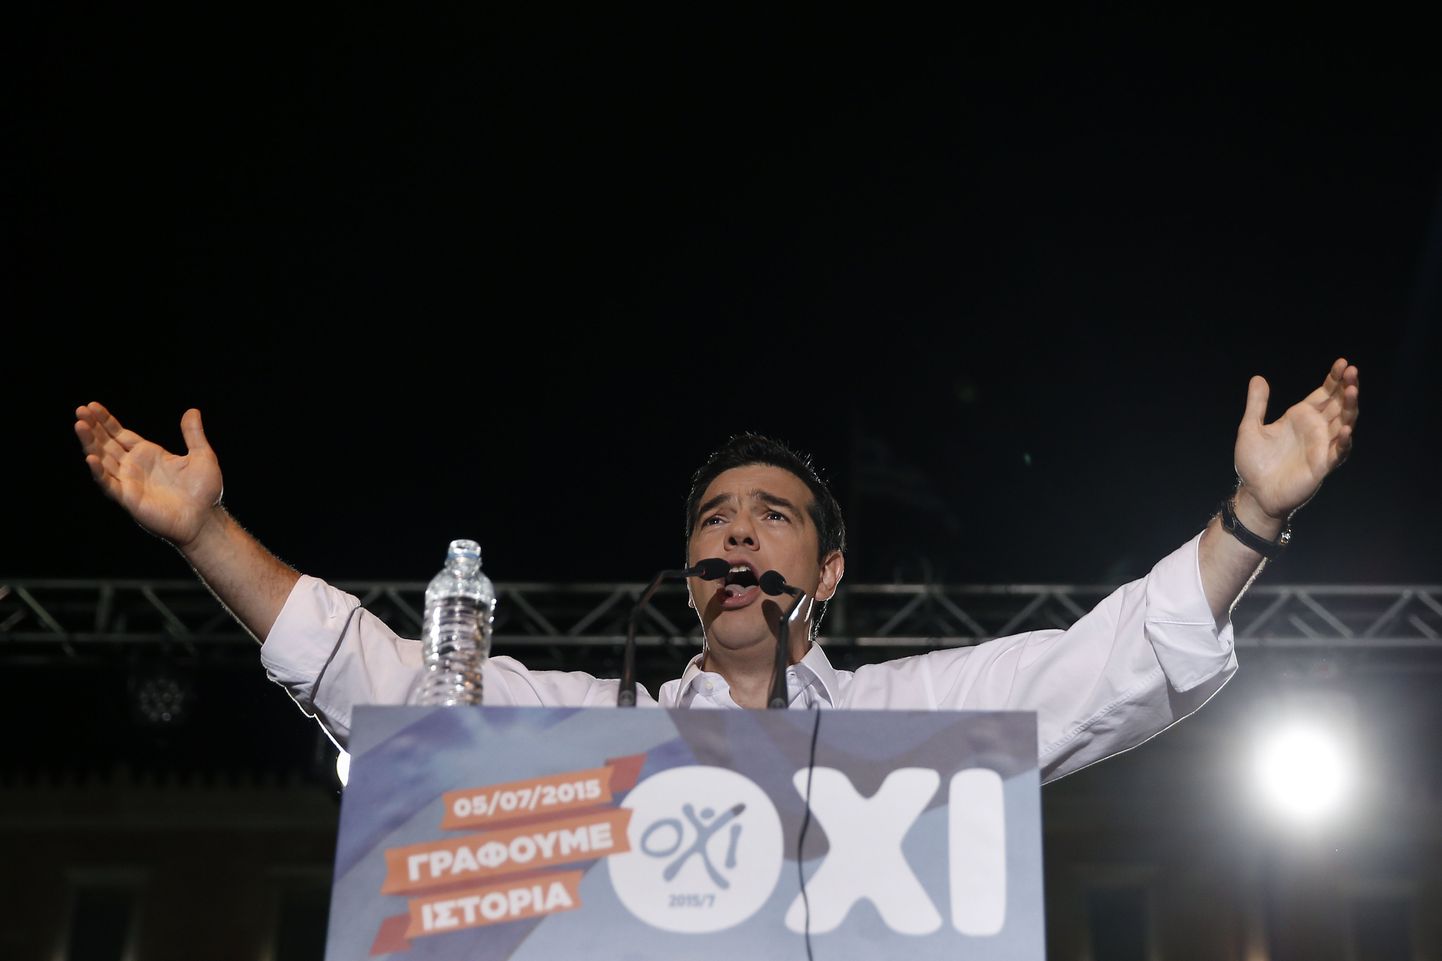 Kreeka peaminister Alexis Tsipras reede õhtul rahvale kõnelemas.